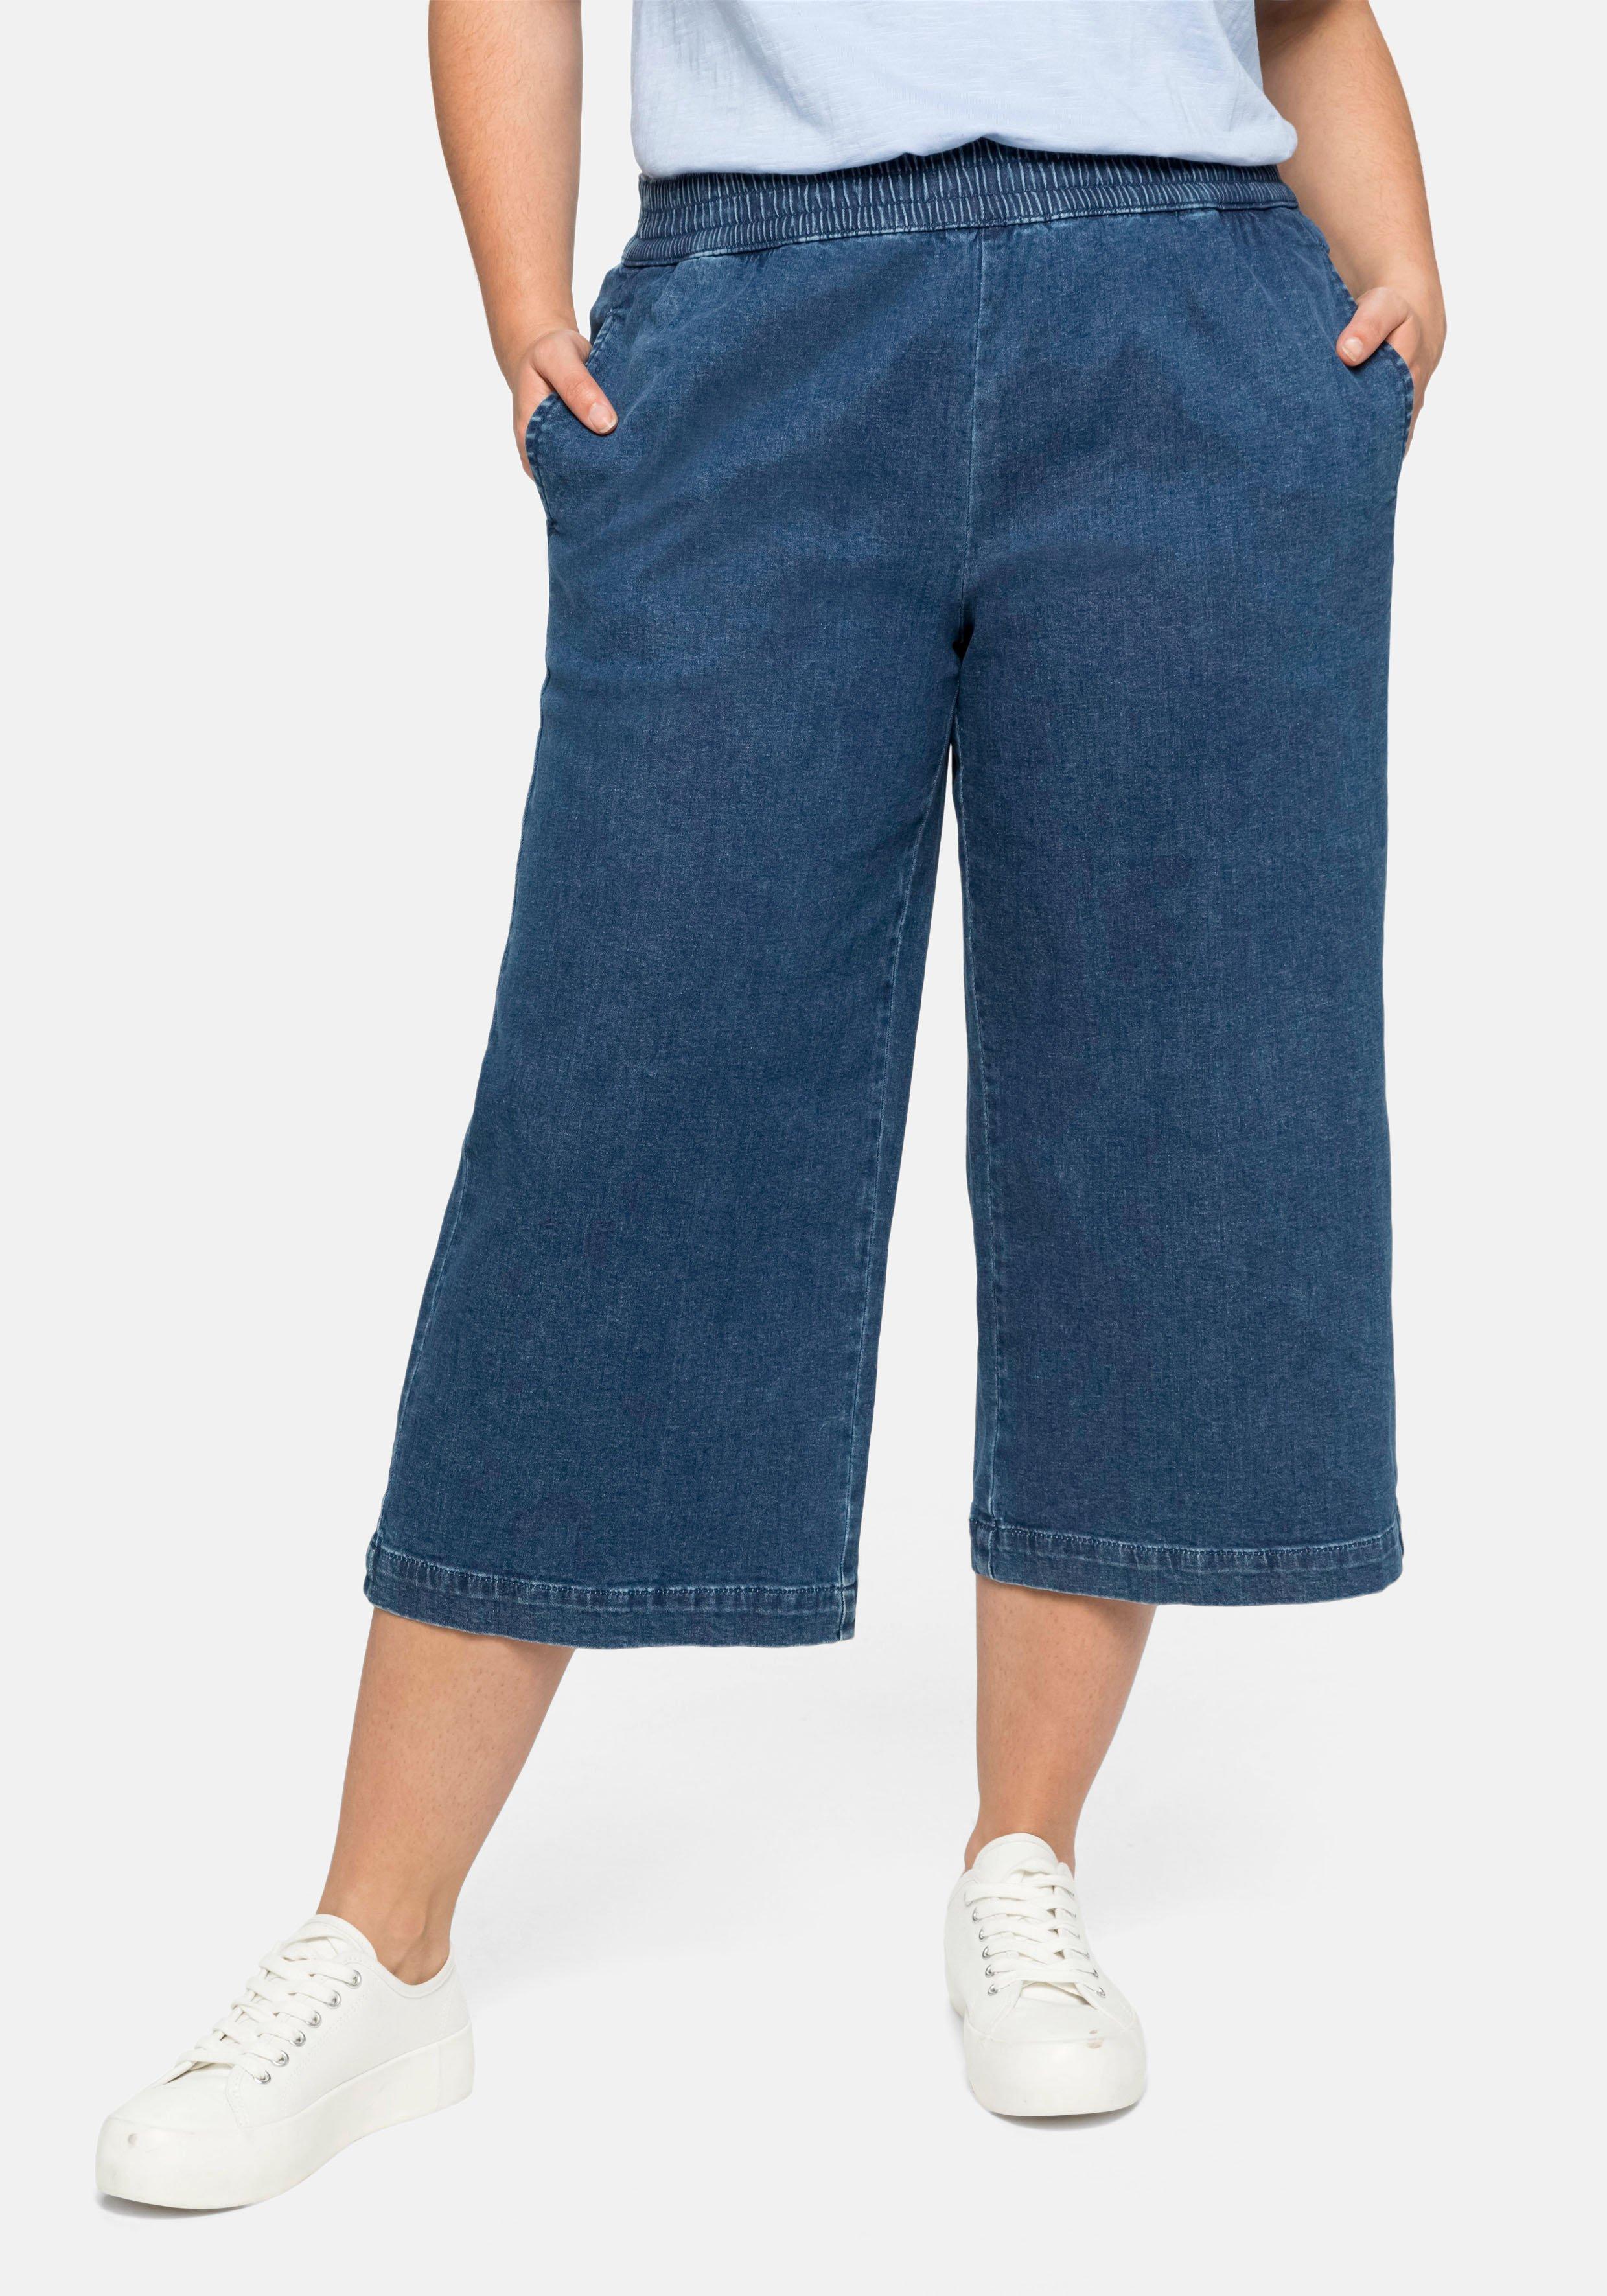 Jeans in 3/4-Länge, in weiter Beinform mit Schlupfbund - blue Denim | sheego